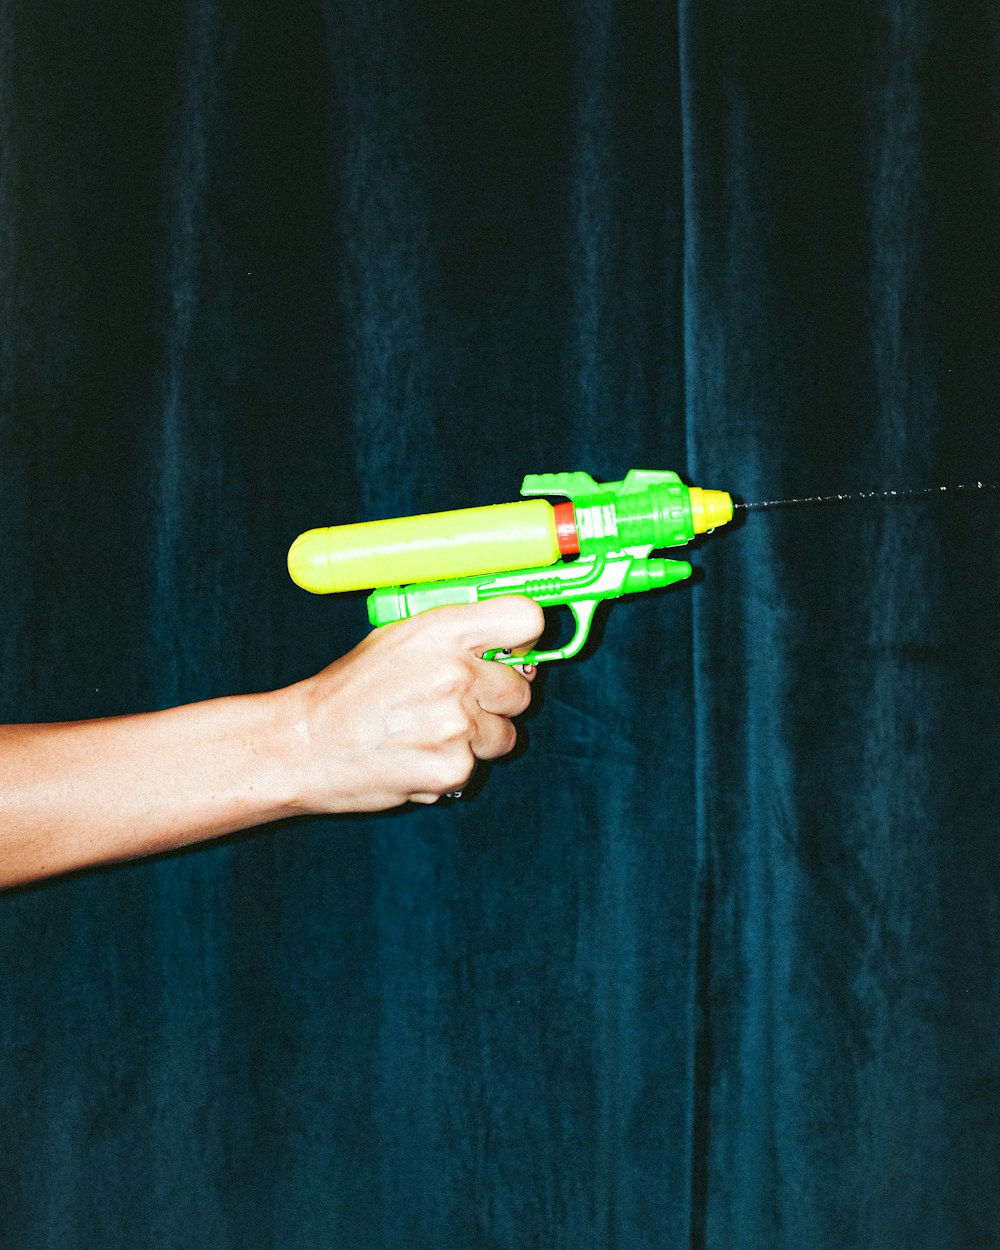 녹색 플라스틱 장난감 총을 들고 있는 사람